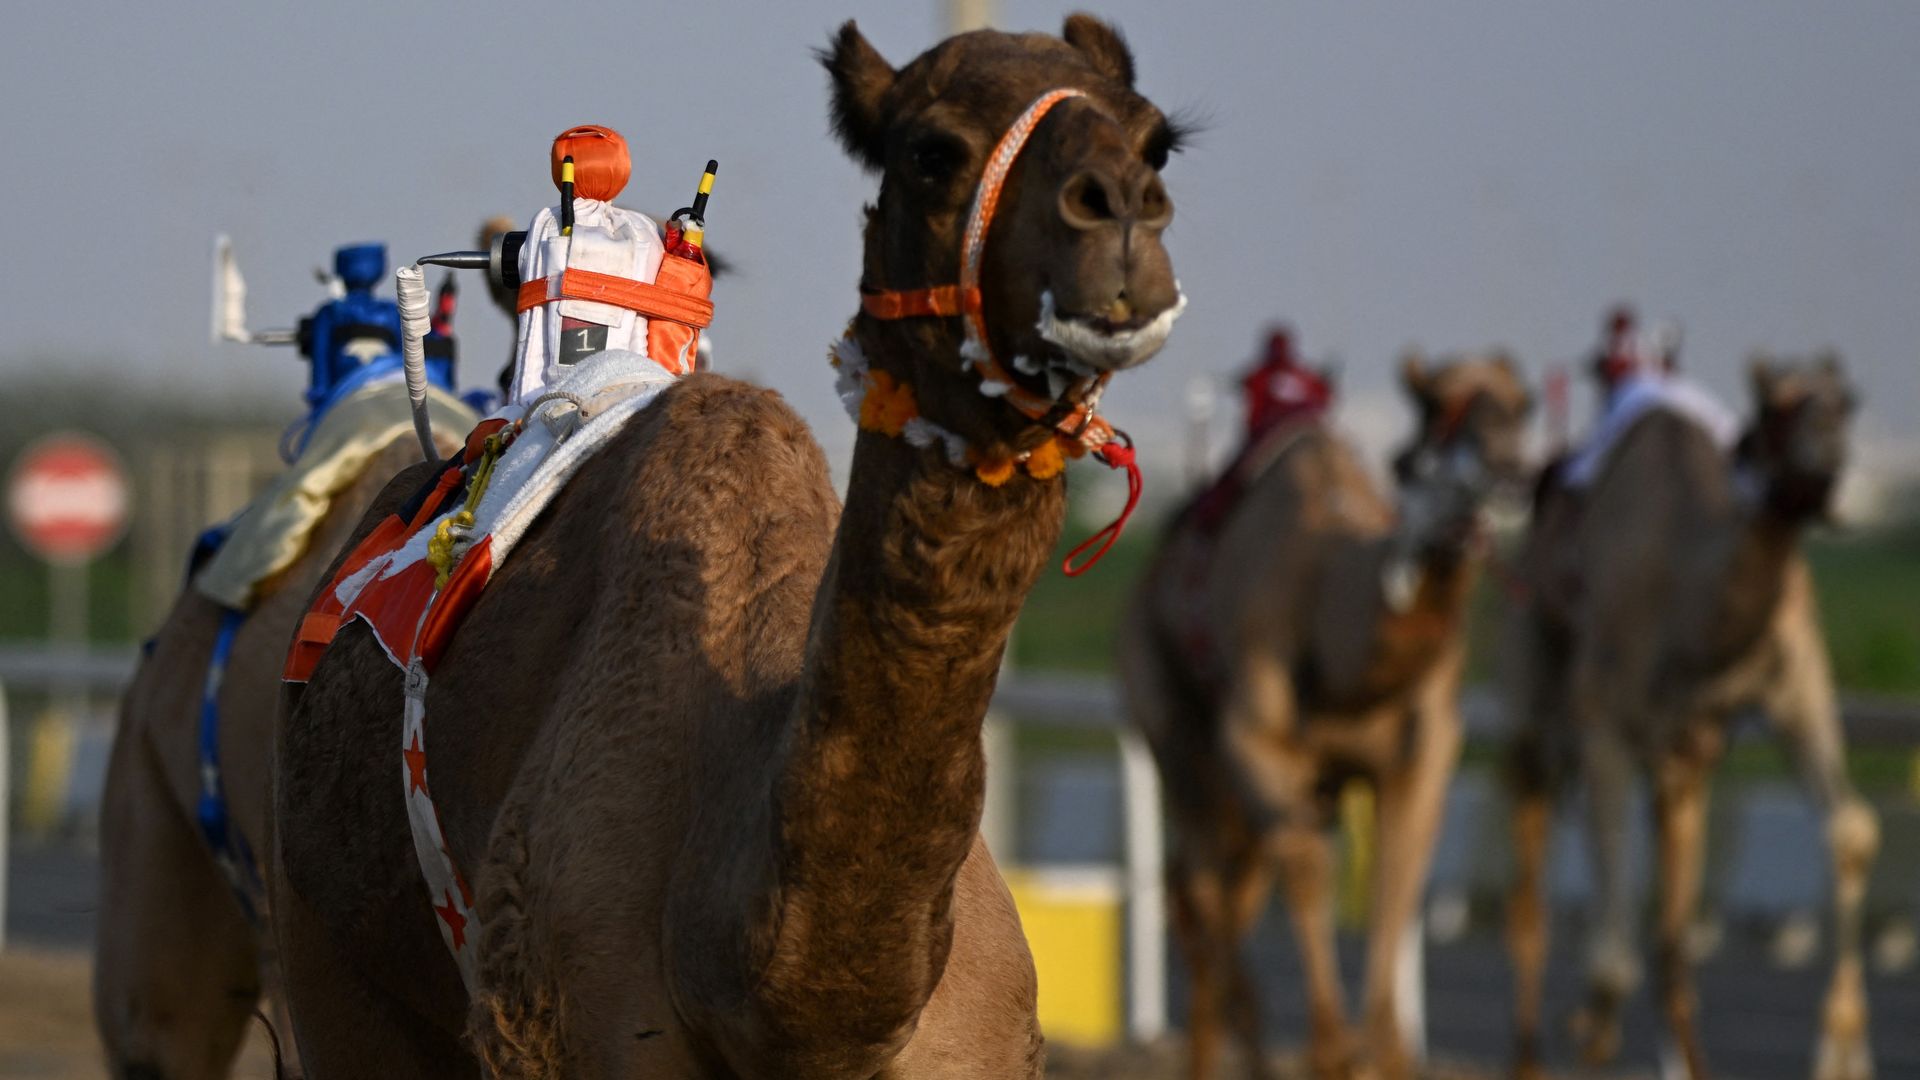 A robot rides a camel like a jockey.